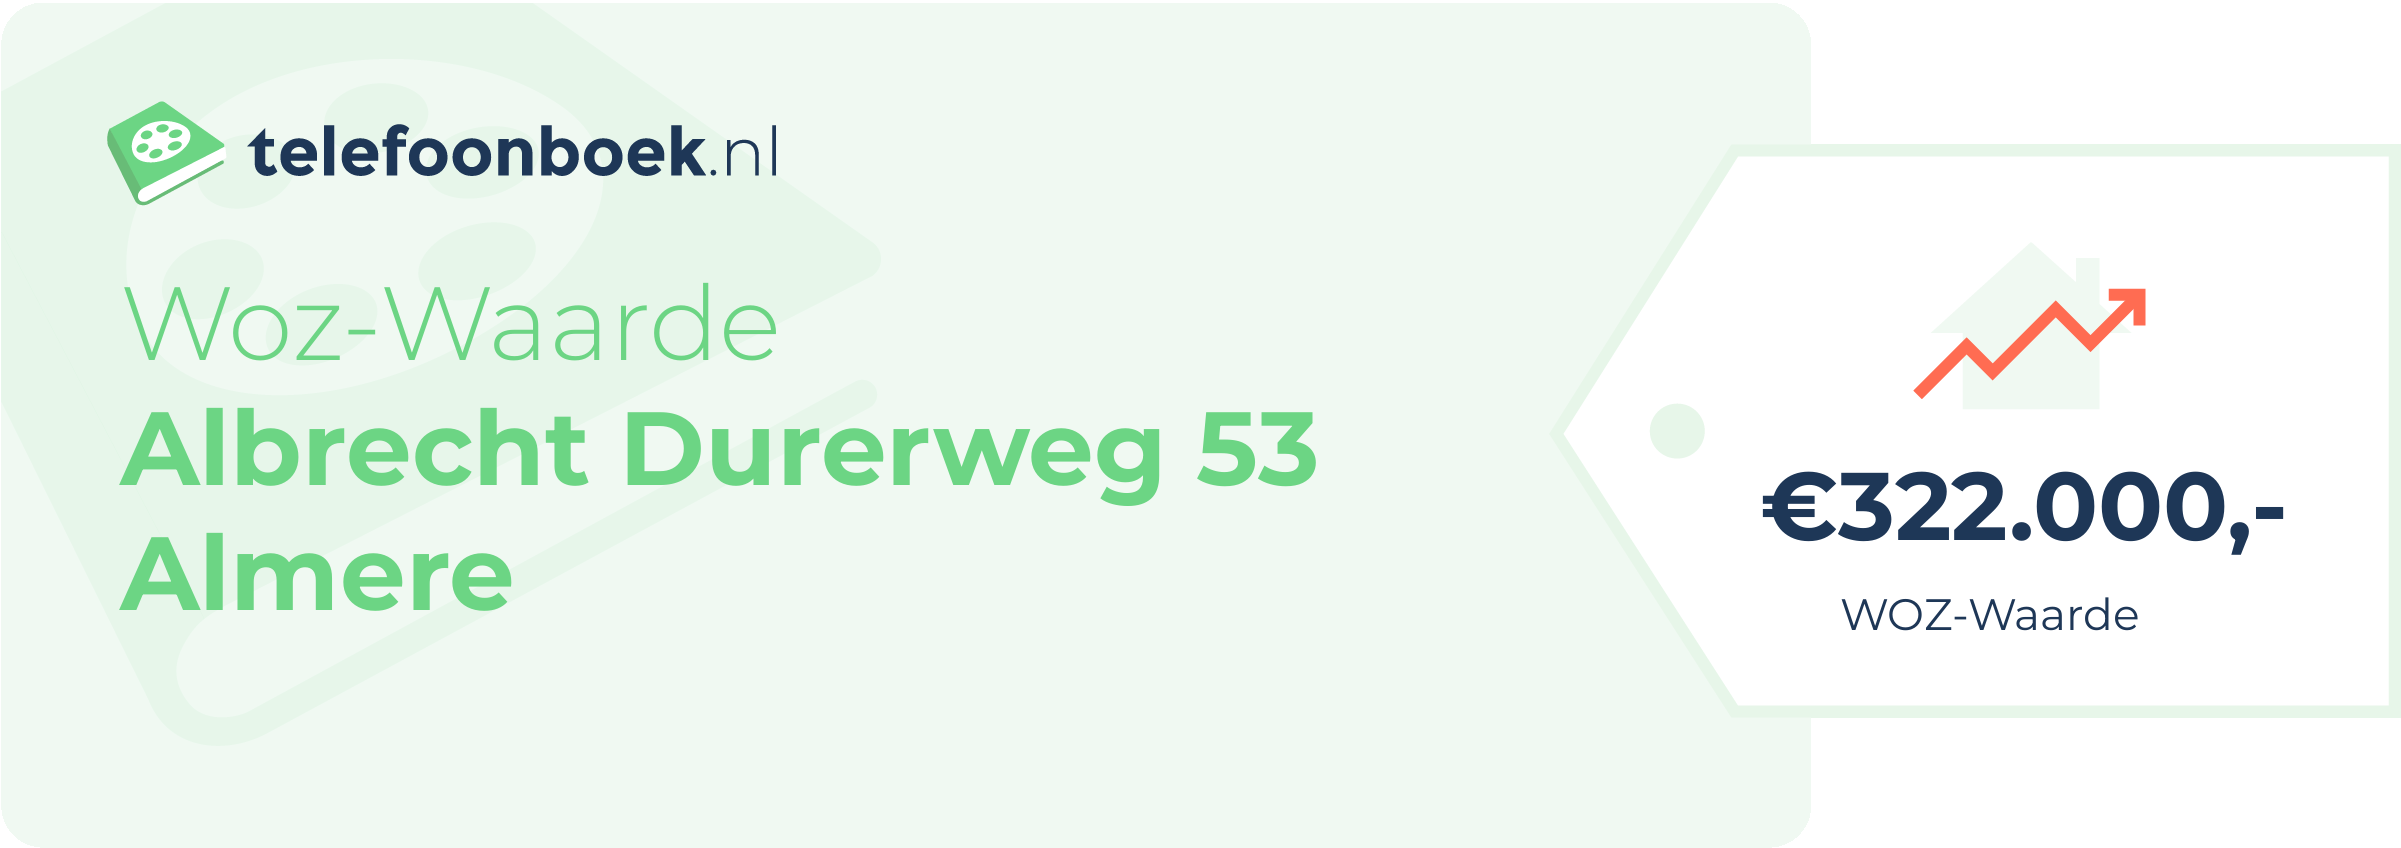 WOZ-waarde Albrecht Durerweg 53 Almere